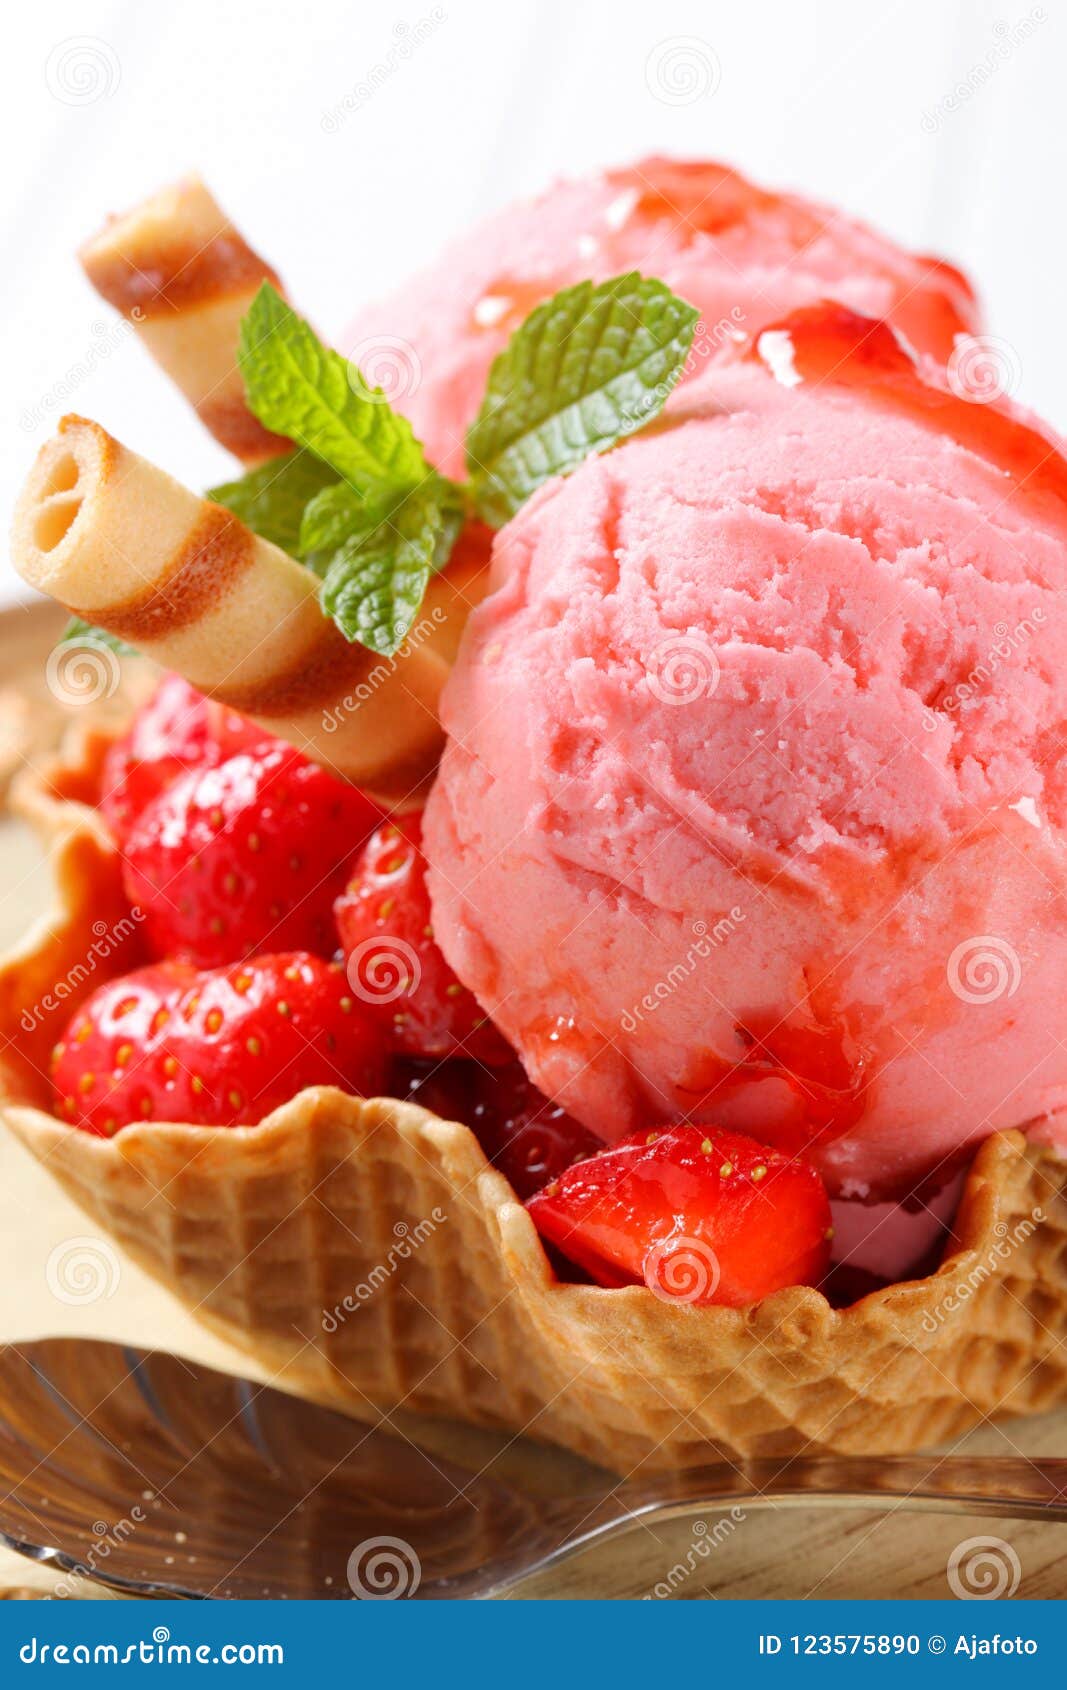 草莓冰淇淋的做法_【图解】草莓冰淇淋怎么做如何做好吃_草莓冰淇淋家常做法大全_Amy的美食日记_豆果美食